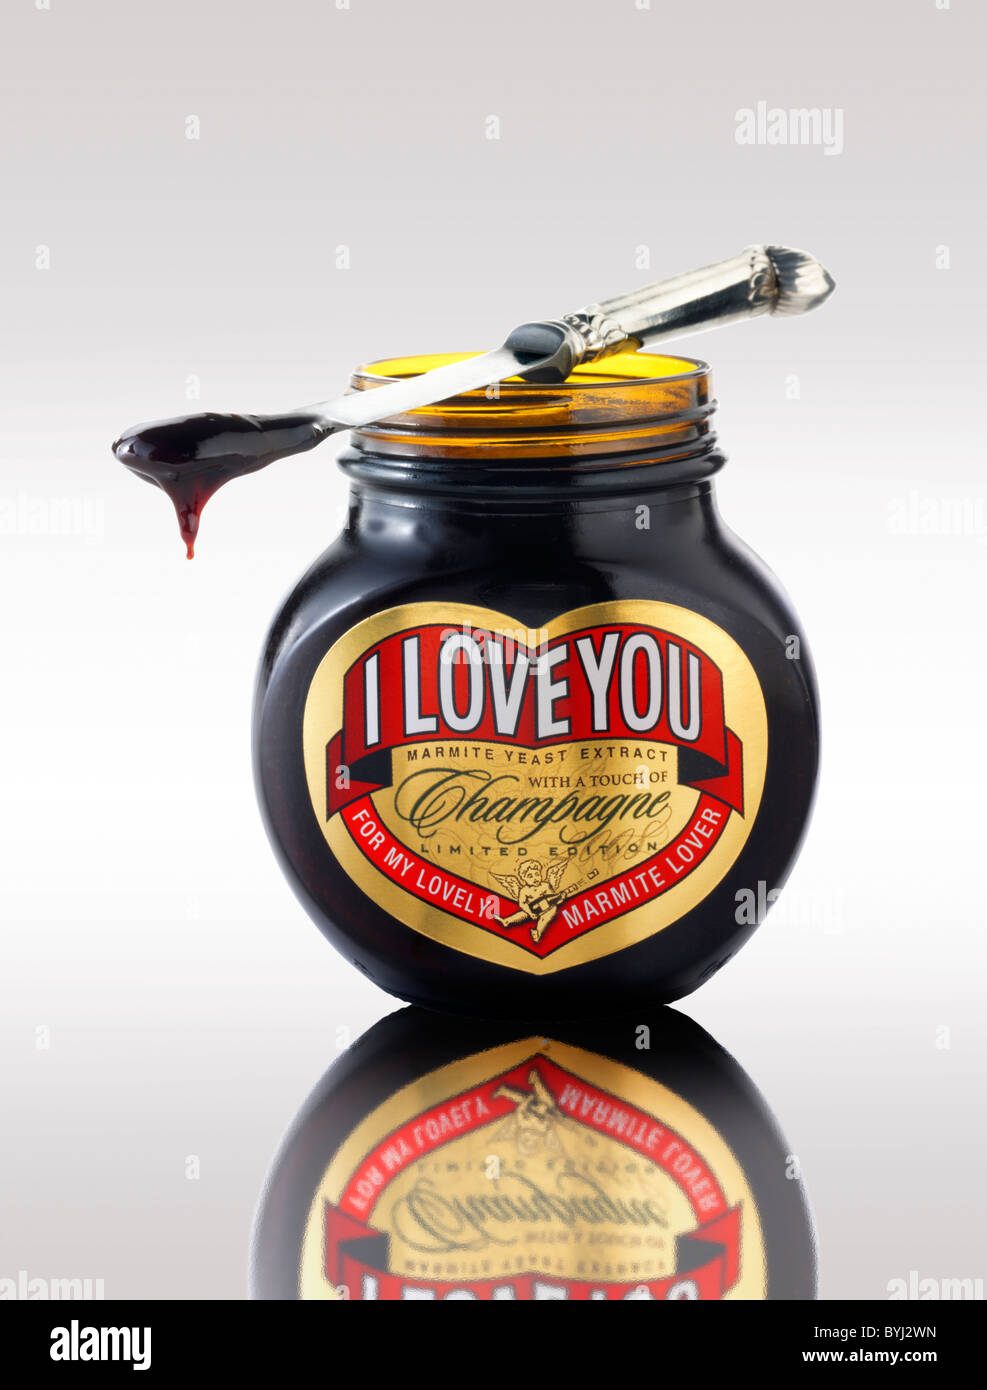 Pot de Marmite traditionnelle avec "I Love You" sur l'étiquette Banque D'Images